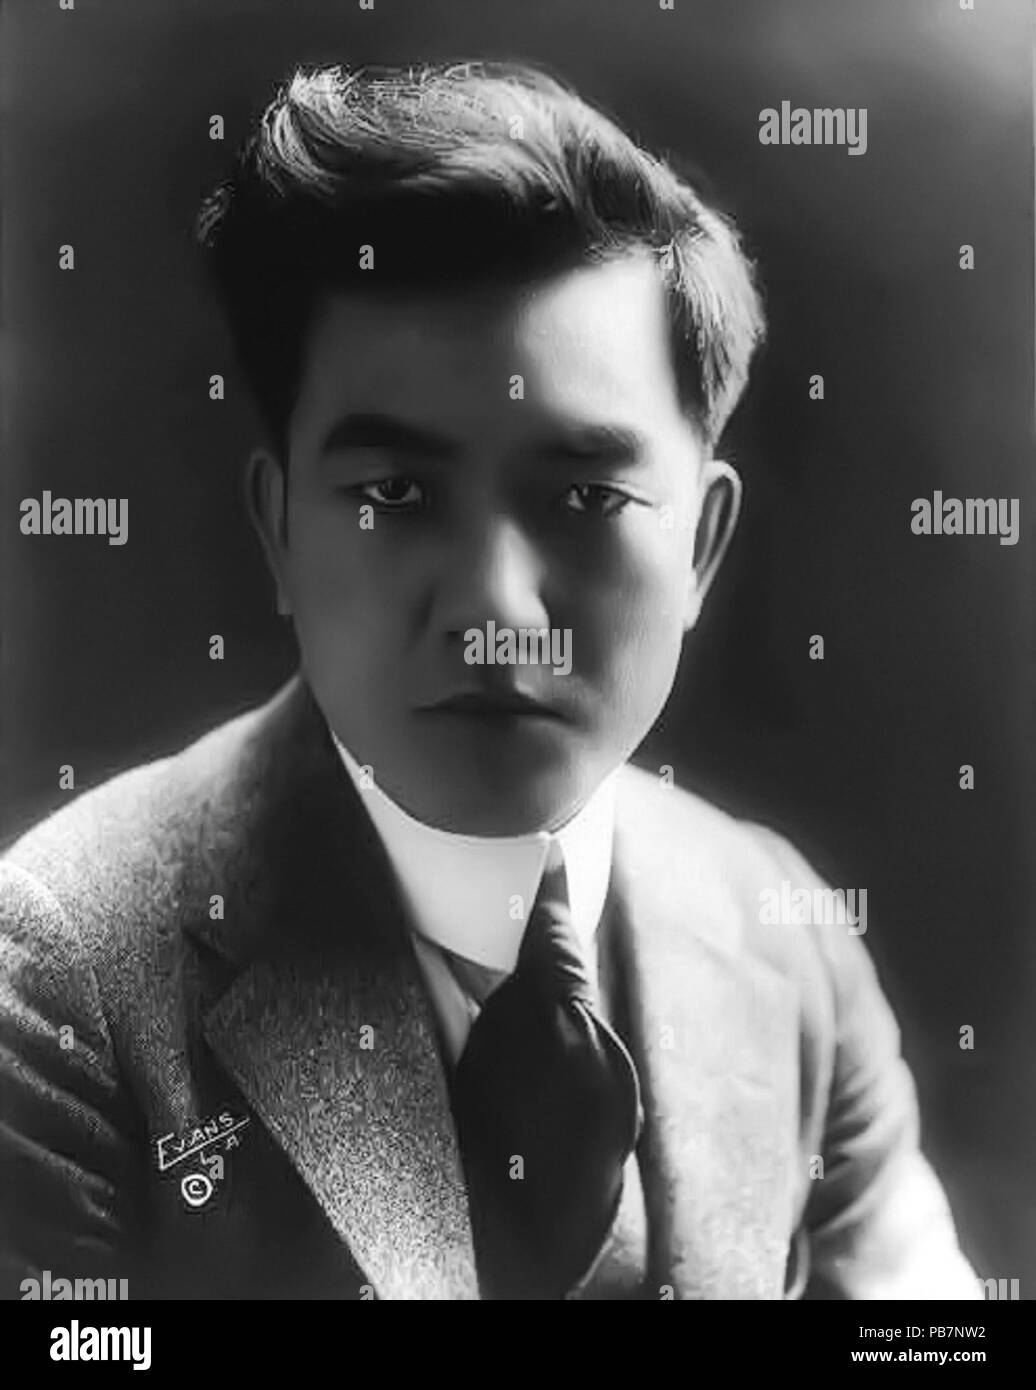 . Englisch: Kintaro Sessue Hayakawa, 1889-1973, Büste Portrait, nach rechts. Erstellt/Veröffentlicht: ca. 22 Oktober 1918 1309 Sessue Hayakawa Ca. 1918 Stockfoto